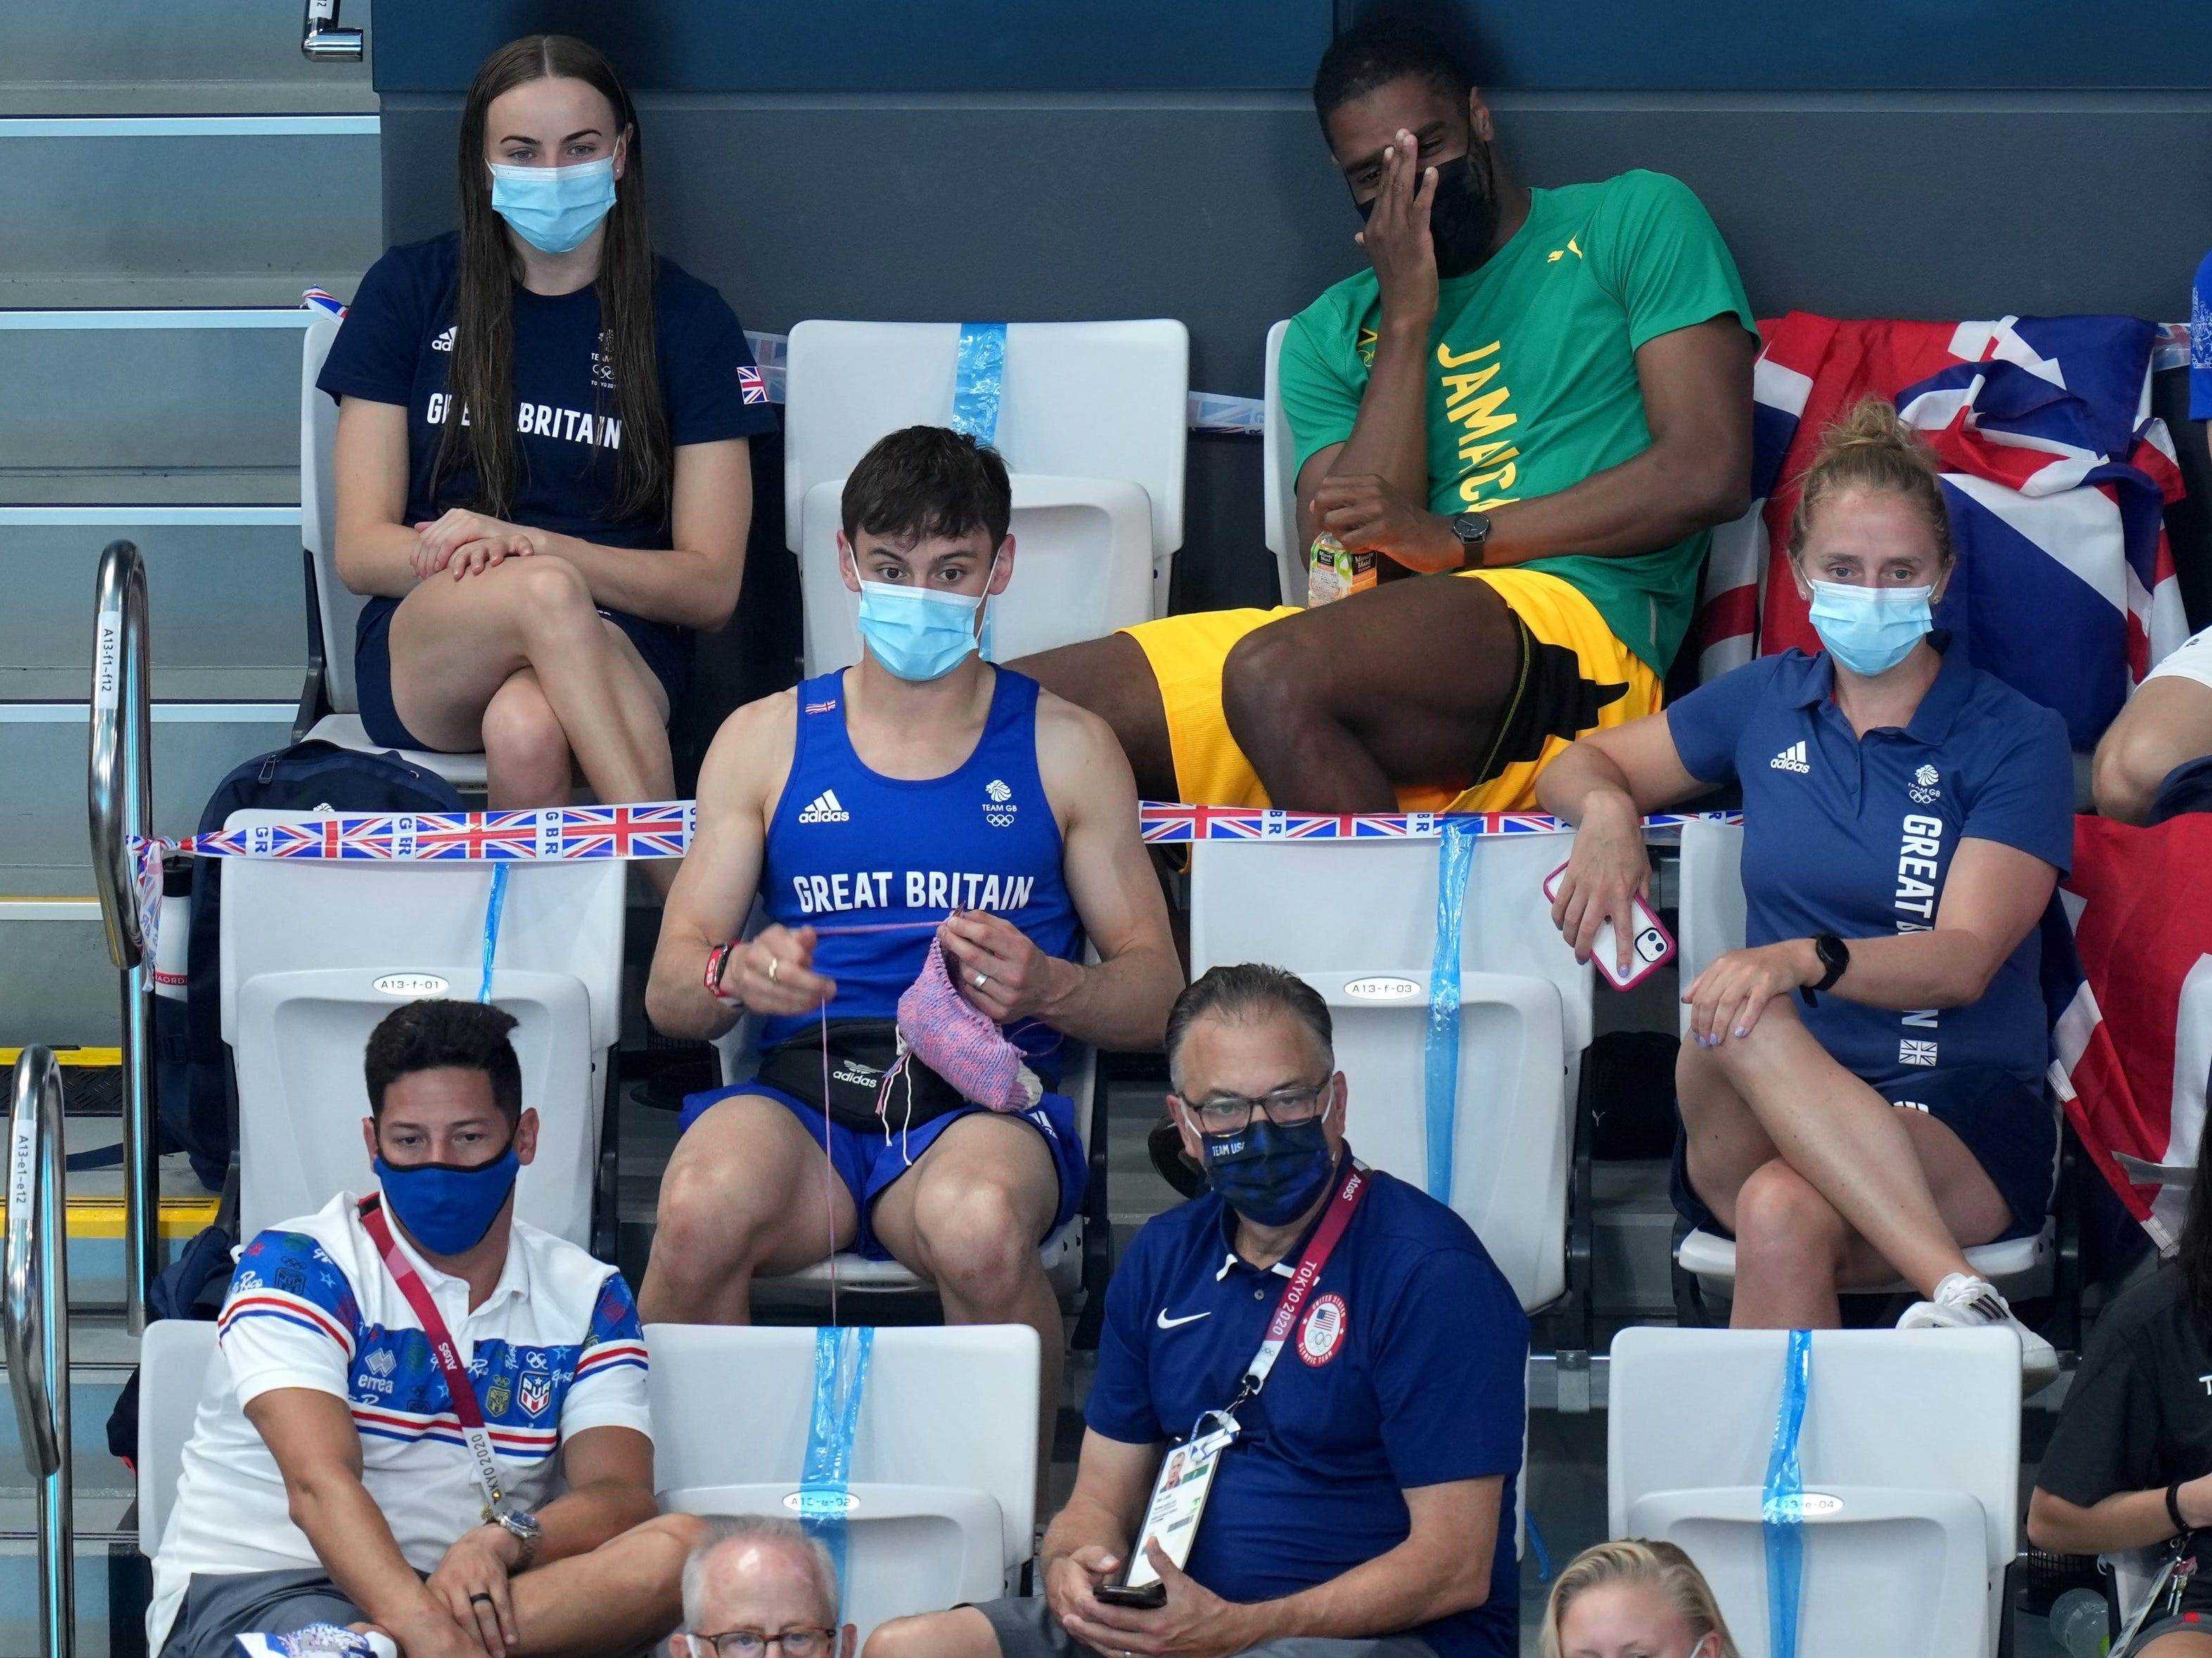 Tom Daley sitzt auf der Zuschauertribüne bei den Olympischen Spielen in Tokio und strickt inmitten des Sprungbrettspringens der Frauen.